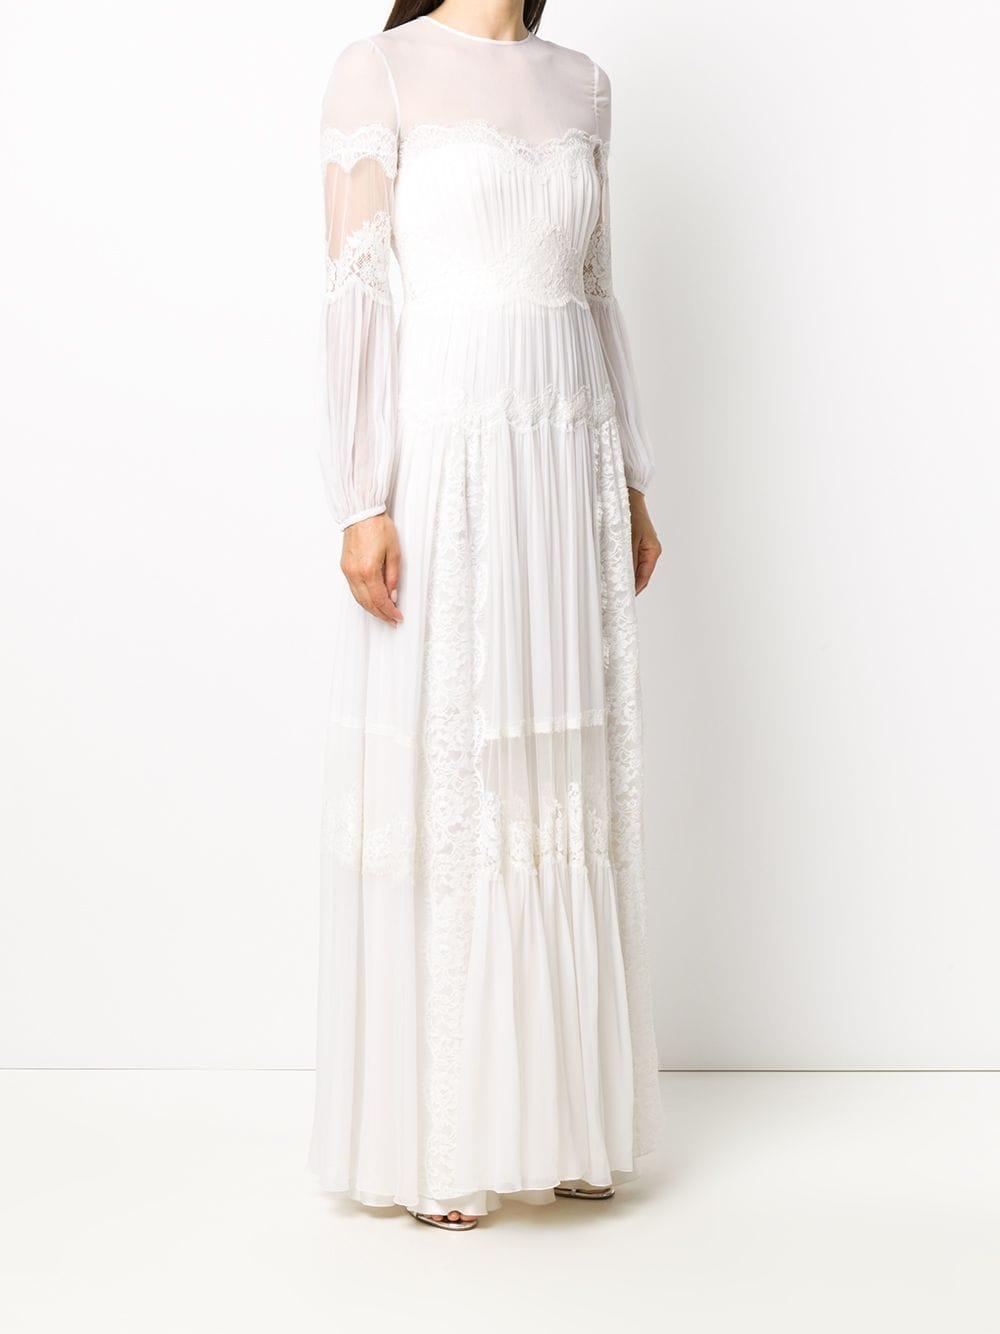 Alberta Ferretti Silk Long Sleeve Lace Detail Dress in White - Lyst